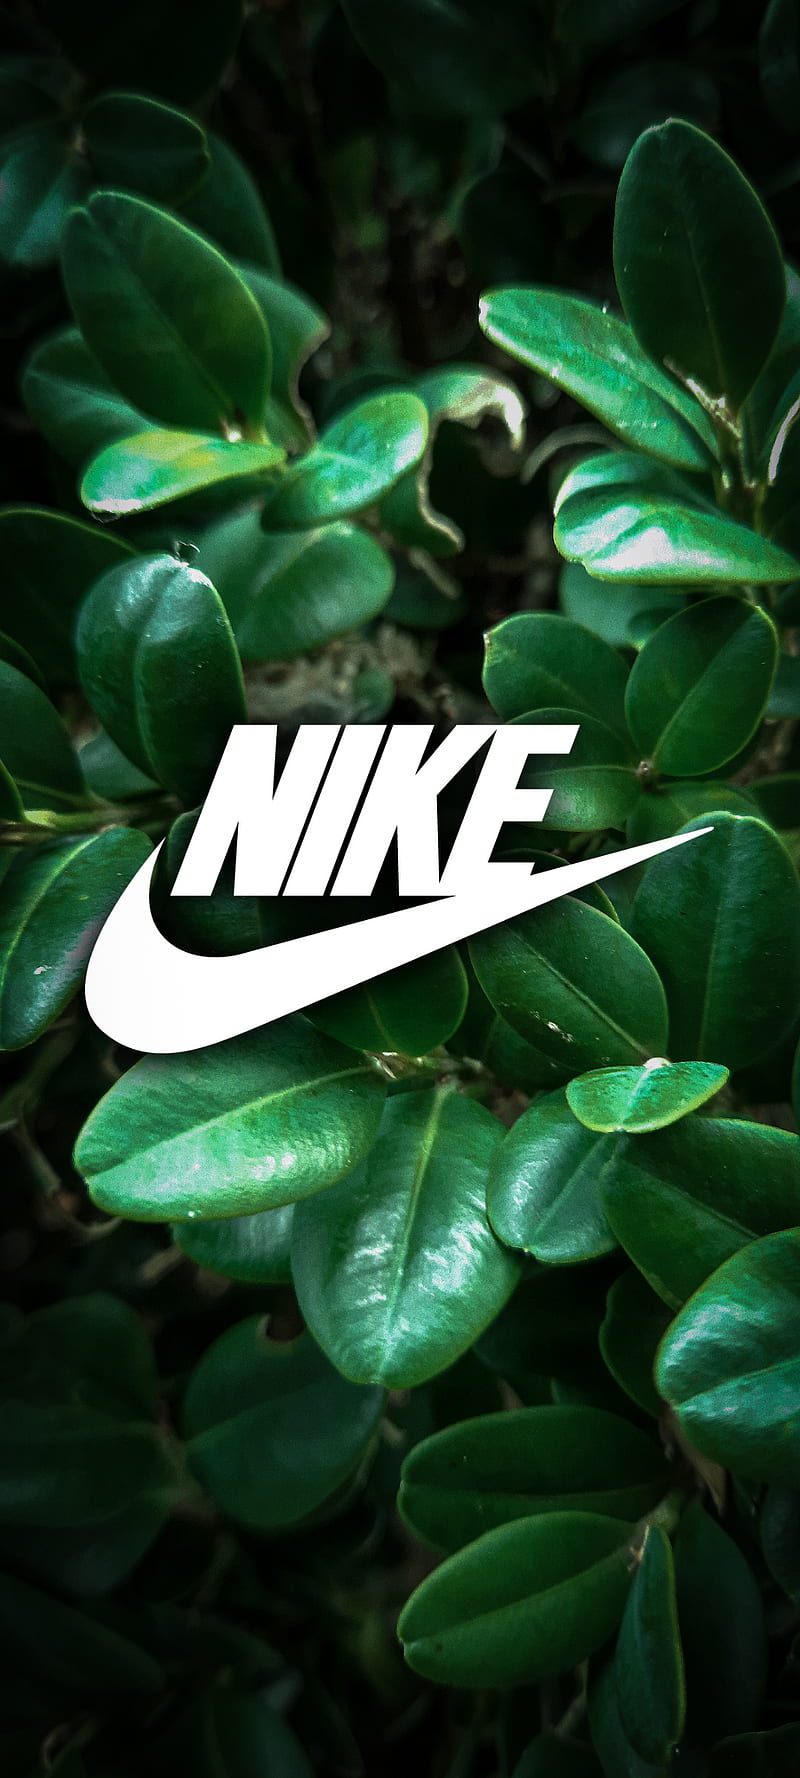 Nike logo và màu sắc xanh lá cây là một cặp đôi lý tưởng cho những người yêu thích thể thao và màu sắc tươi sáng! Hình nền Nike logo trên nền xanh lá sẽ khiến mọi người thèm muốn sở hữu ngay! Hãy xem hình ảnh và sẵn sàng cập nhật điện thoại của bạn nhé!